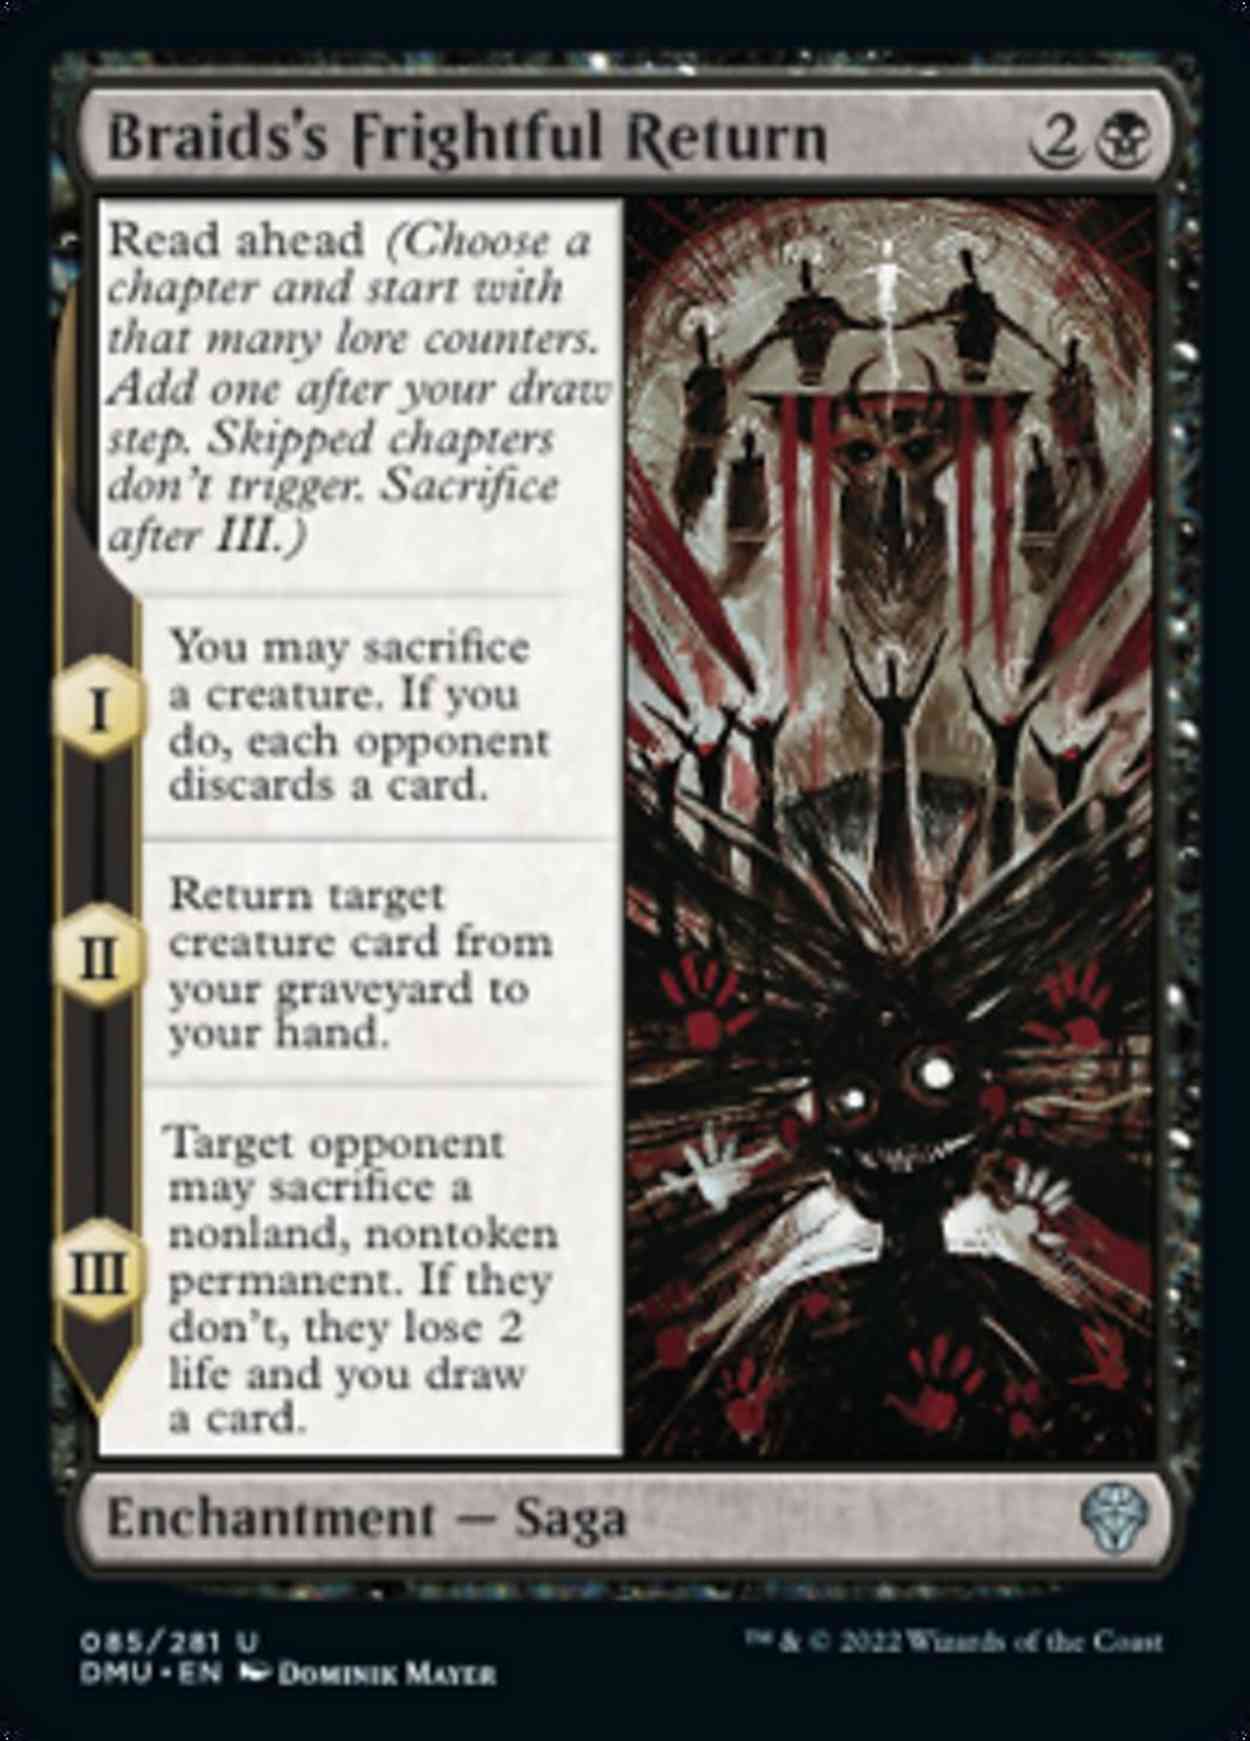 Braids's Frightful Return magic card front